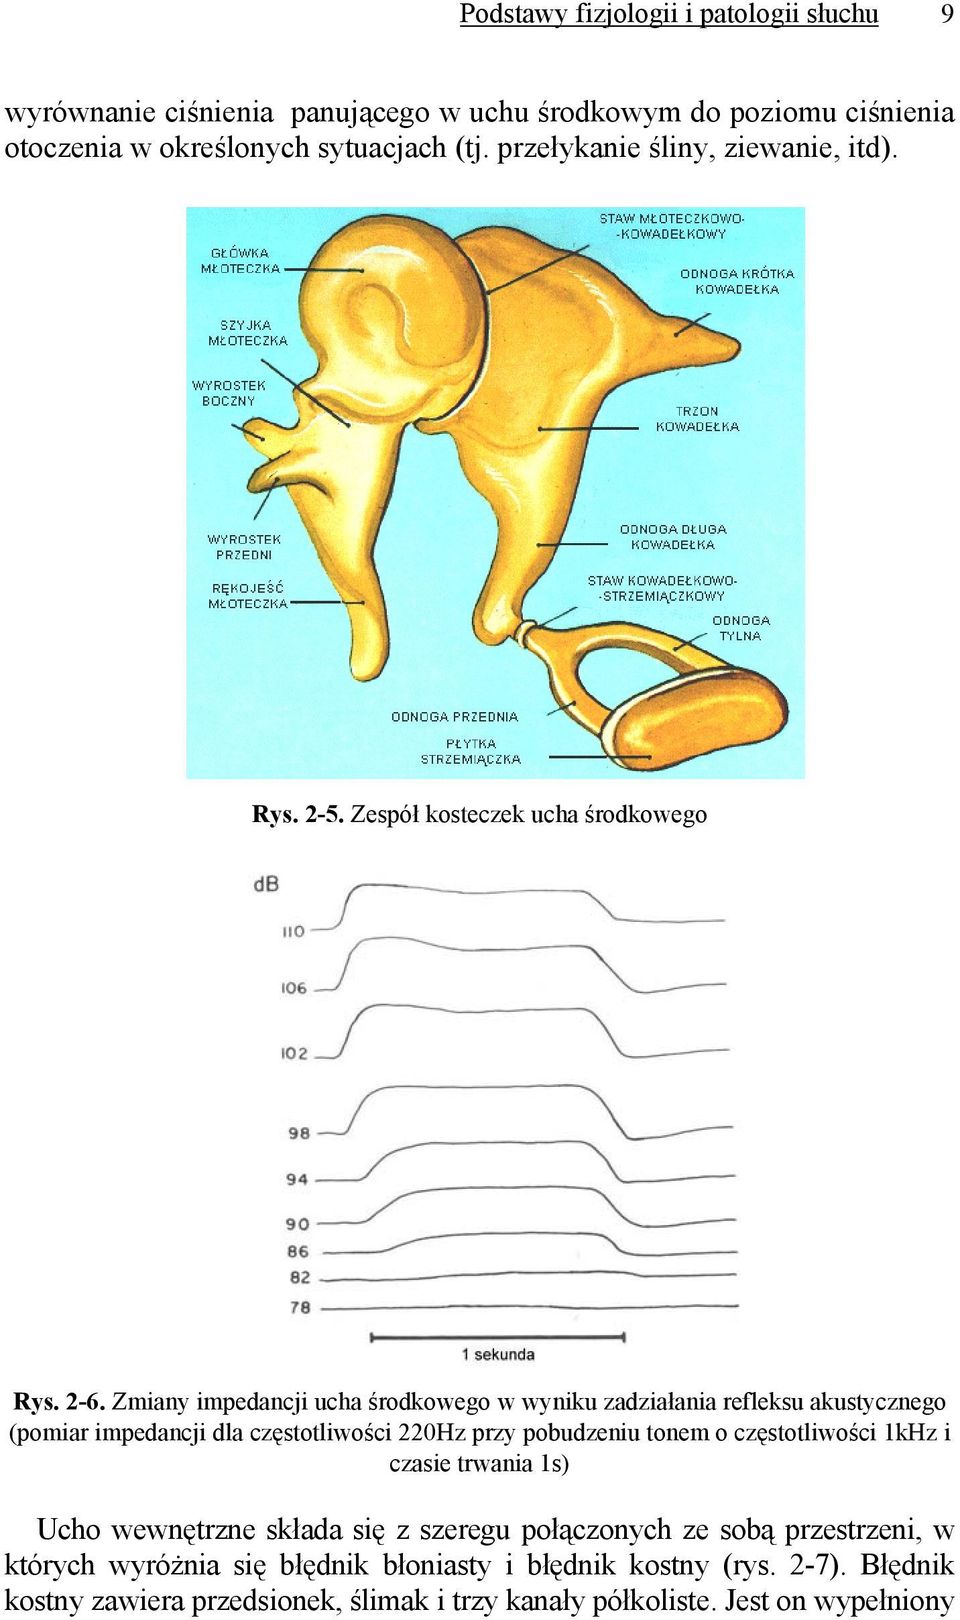 Zmiany impedancji ucha środkowego w wyniku zadziałania refleksu akustycznego (pomiar impedancji dla częstotliwości 220Hz przy pobudzeniu tonem o częstotliwości